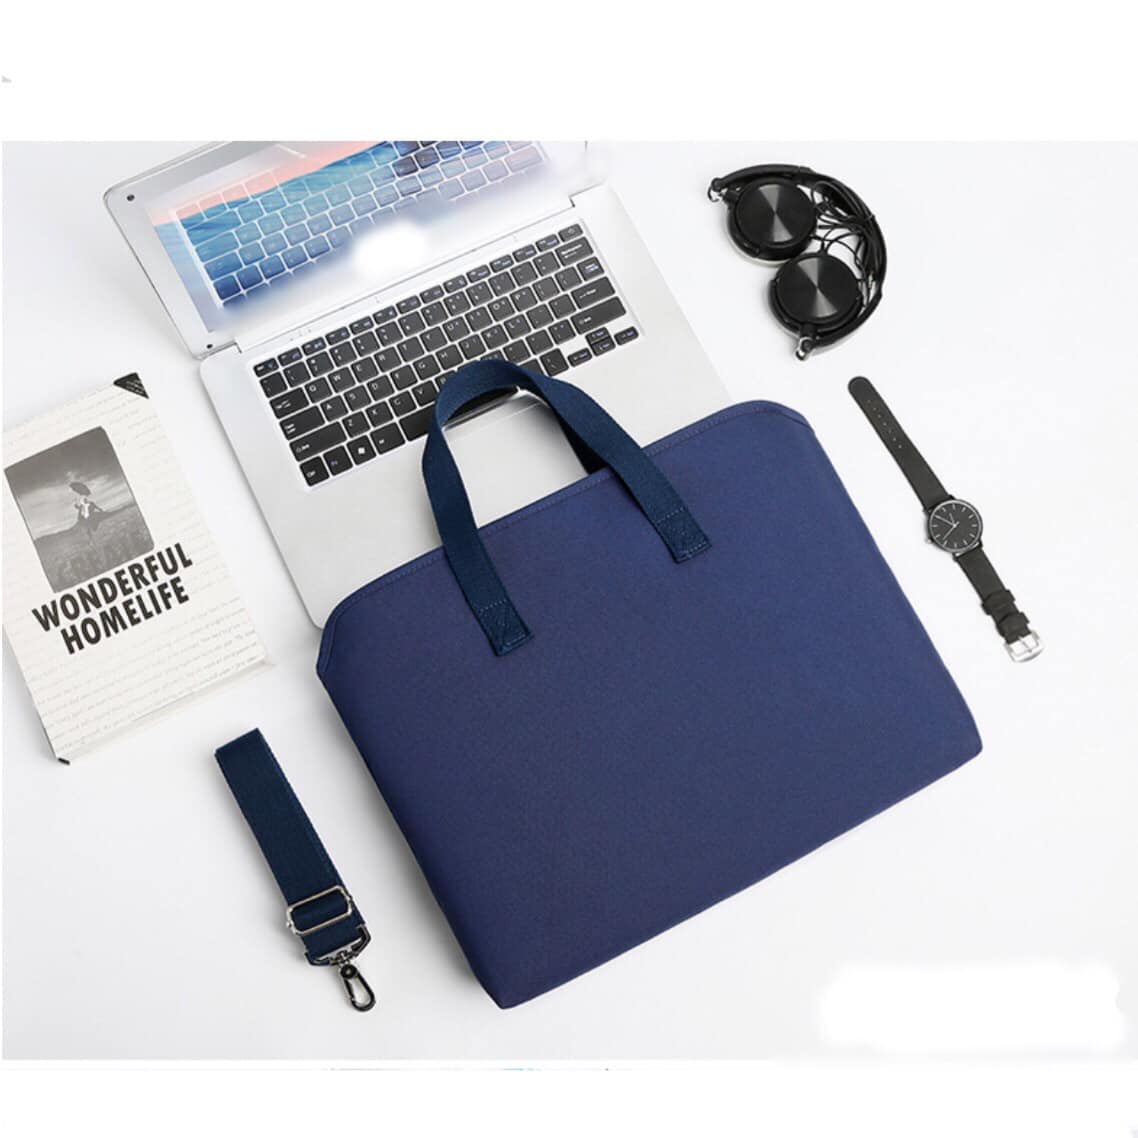 Túi xách chống sốc cho máy tính, macbook, laptop chống nước, siêu nhiều ngăn màu tím - XANH ĐEN - 13 INCH